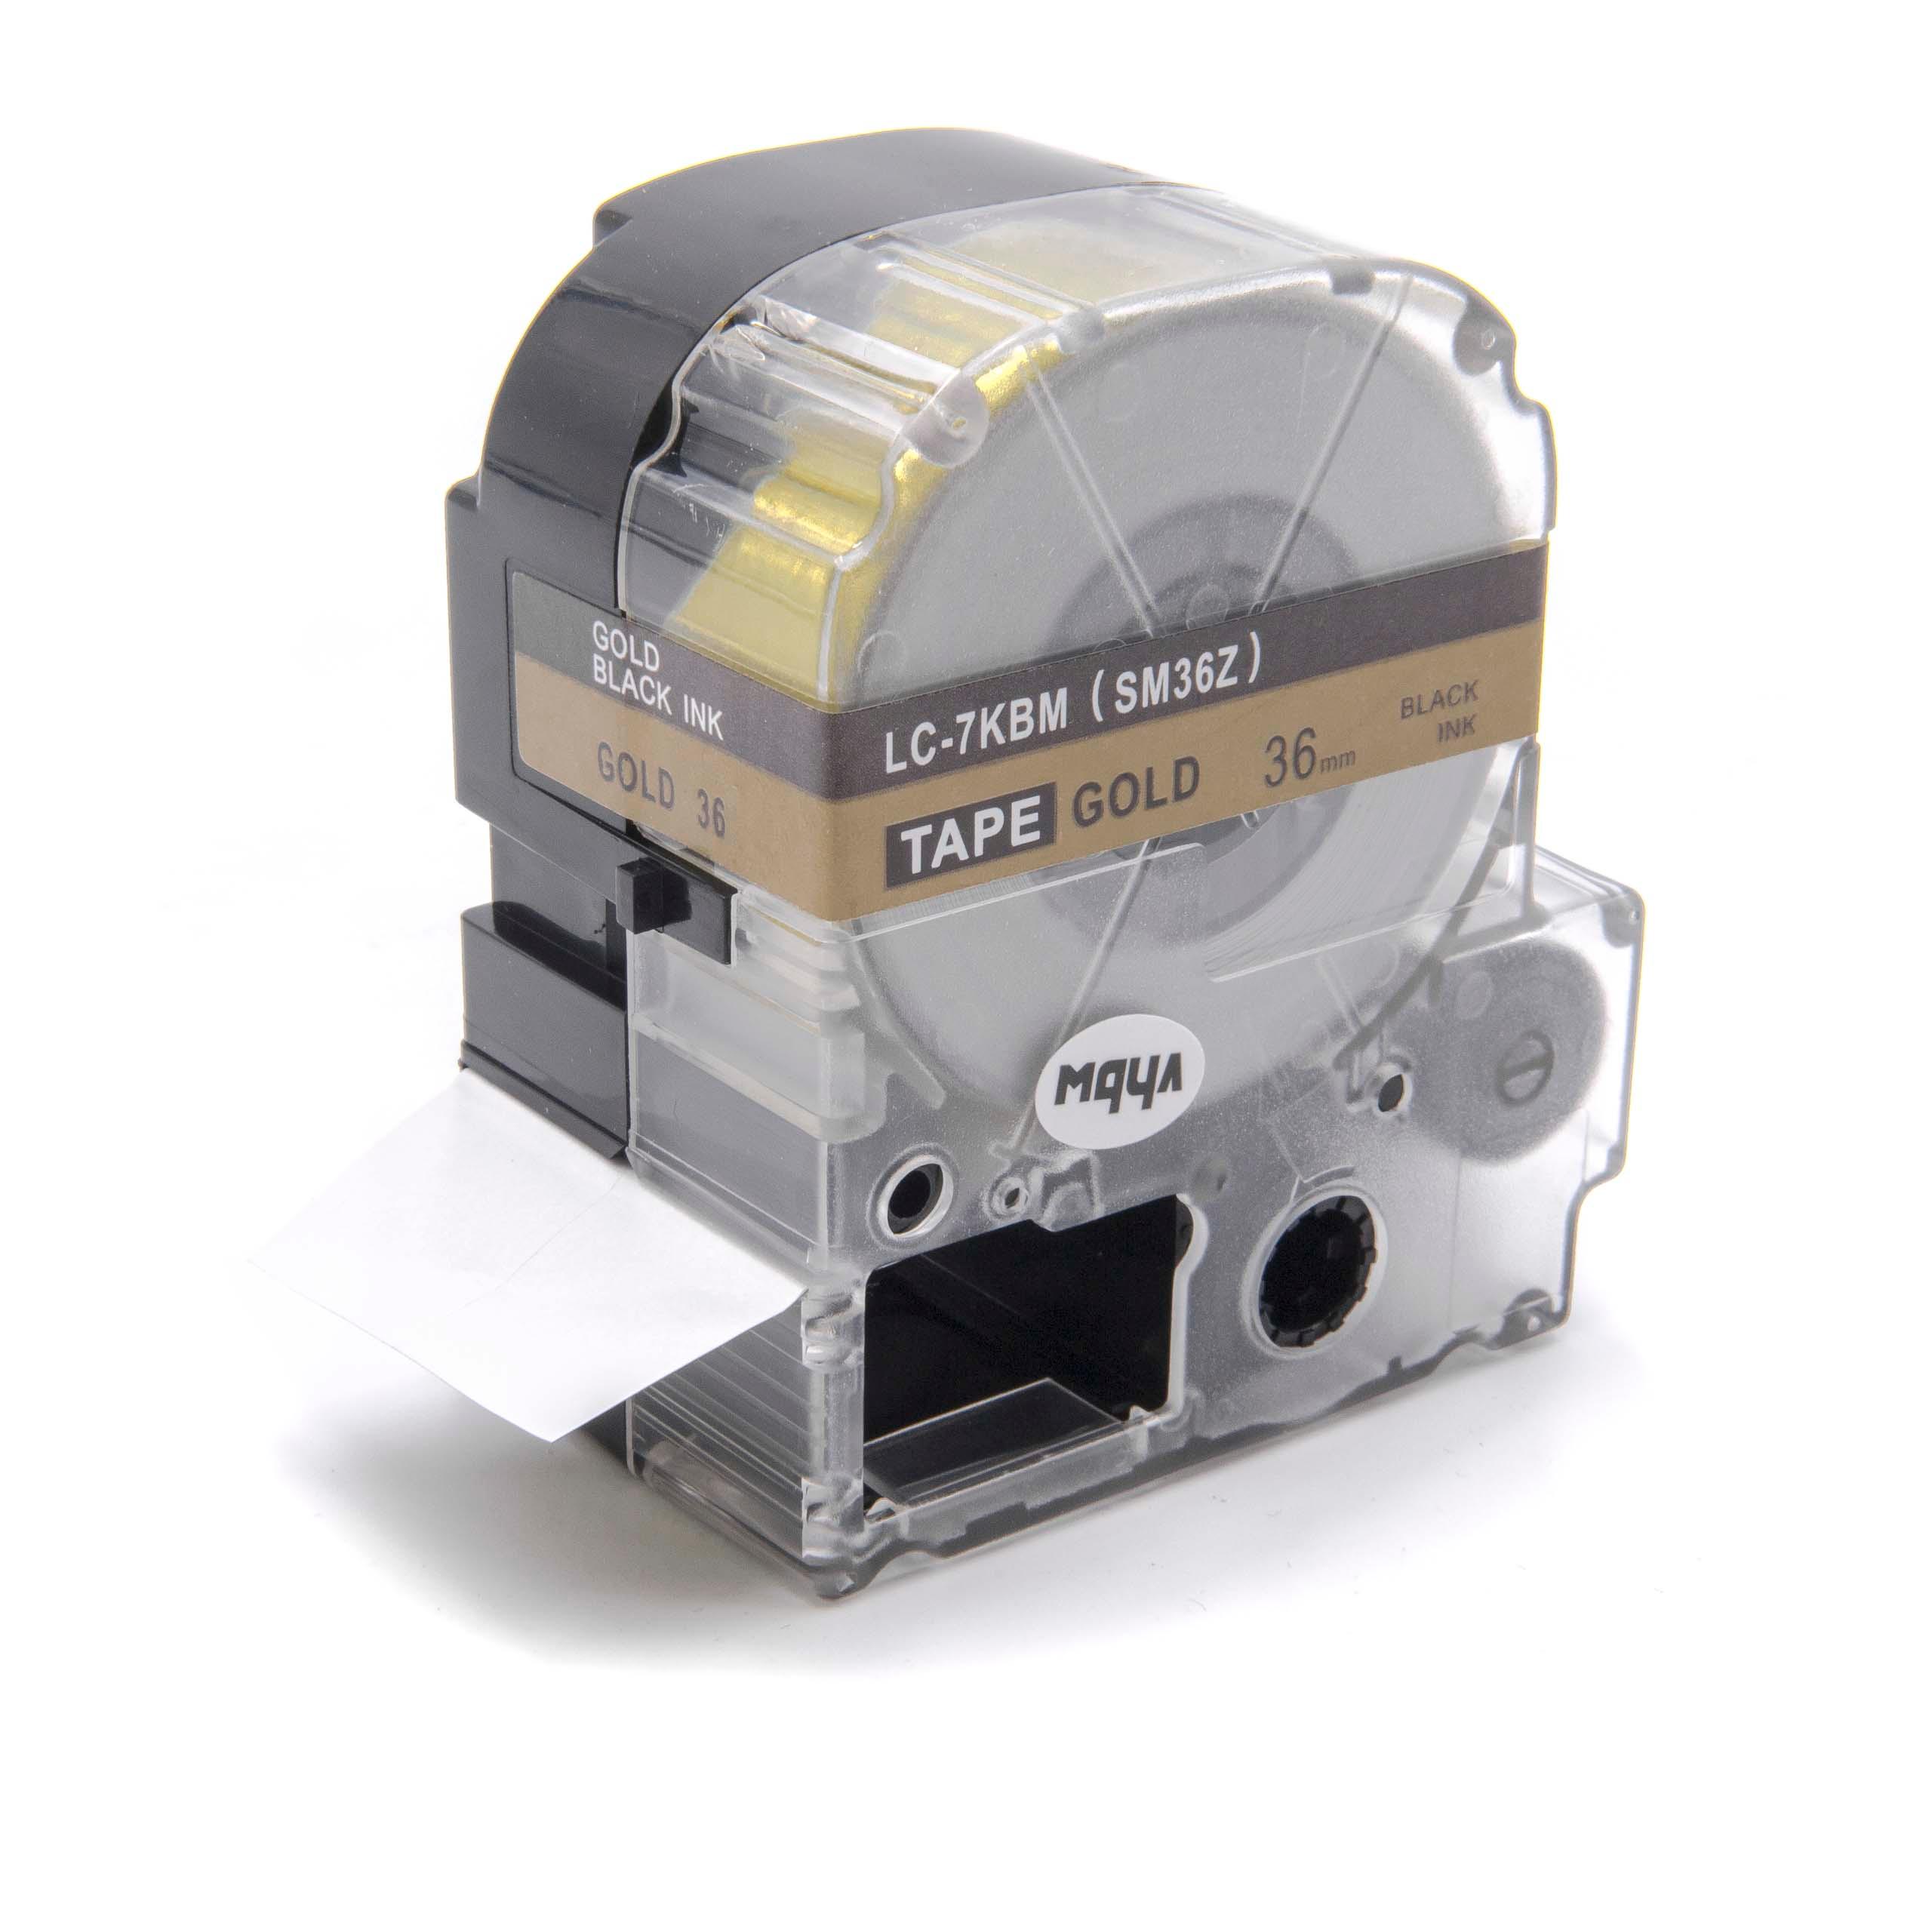 Cassetta nastro sostituisce Epson LC-7KBM per etichettatrice Epson 36mm nero su dorato